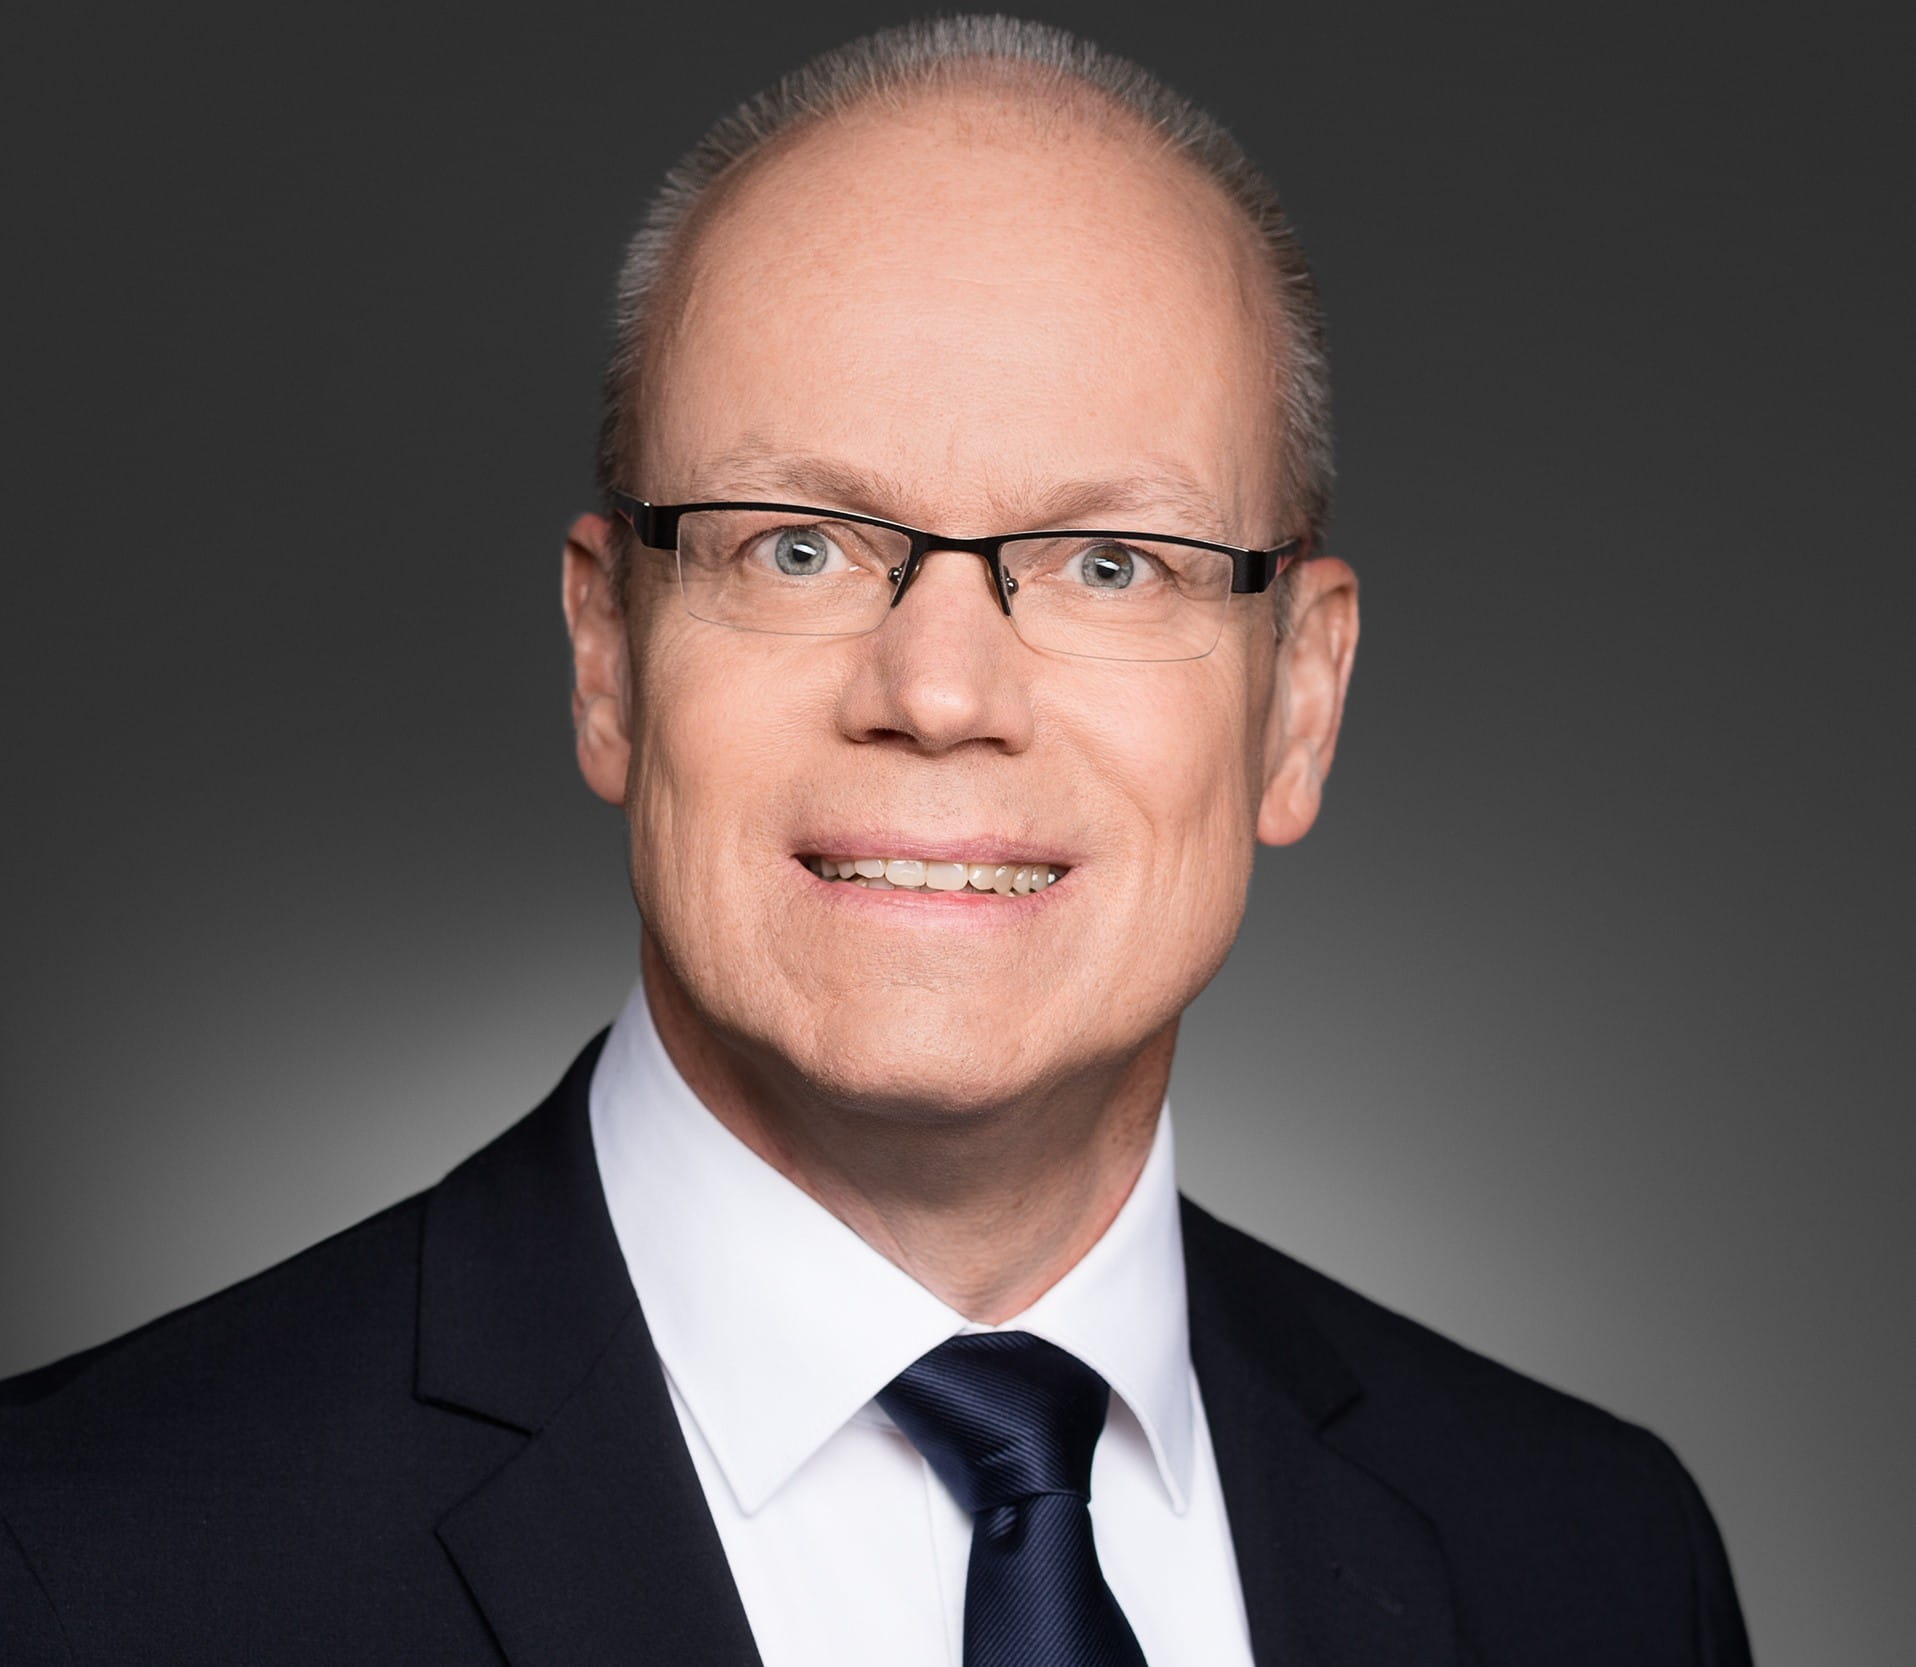 Ulrich Binnebößel, Geschäftsführer HDE, Experte für Zahlungsverkehrsfragen beim Handelsverband Deutschland